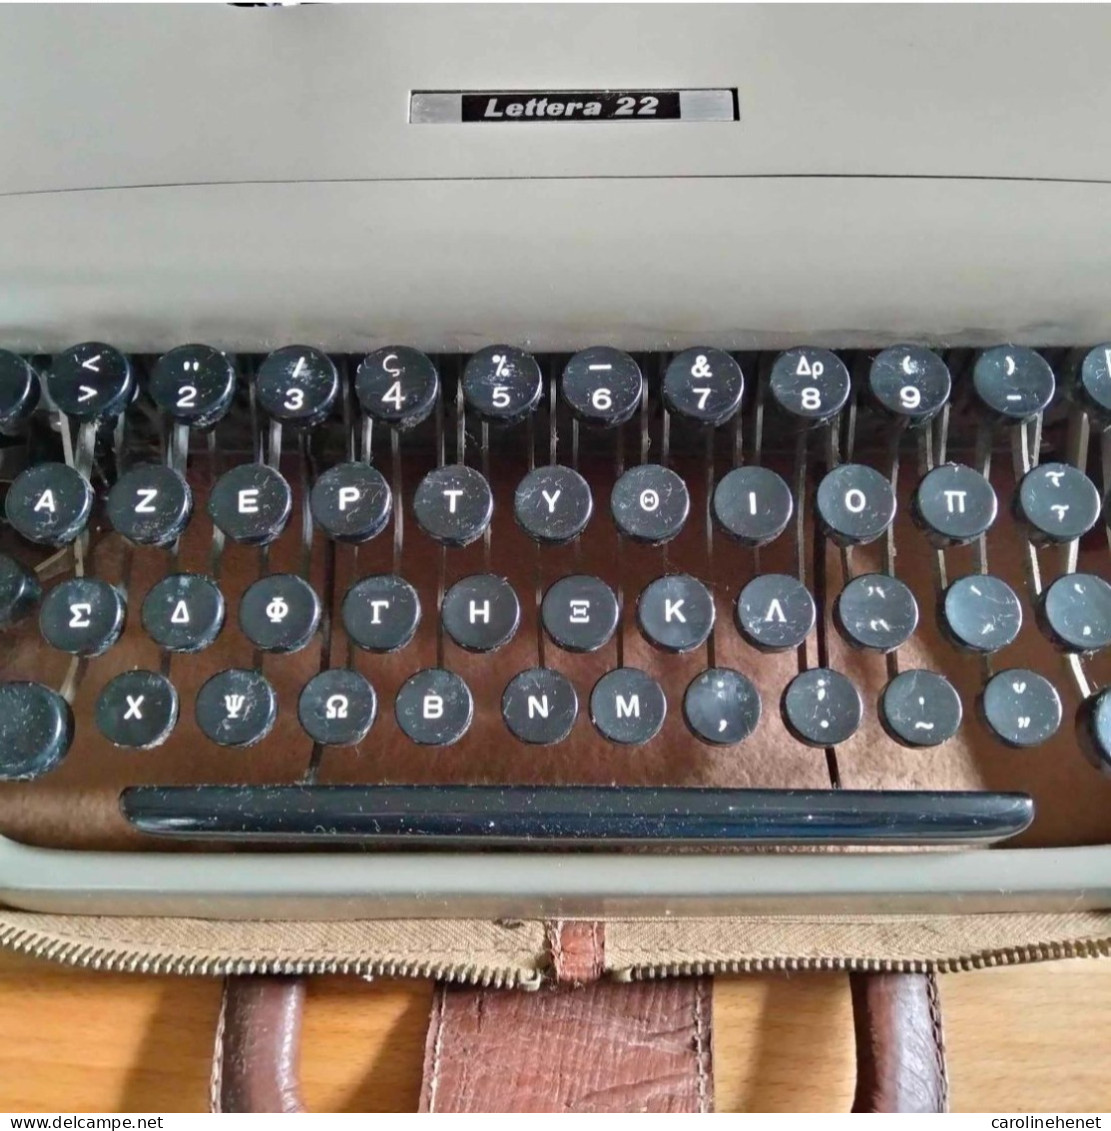 Machines à écrire, clavier grec et français!